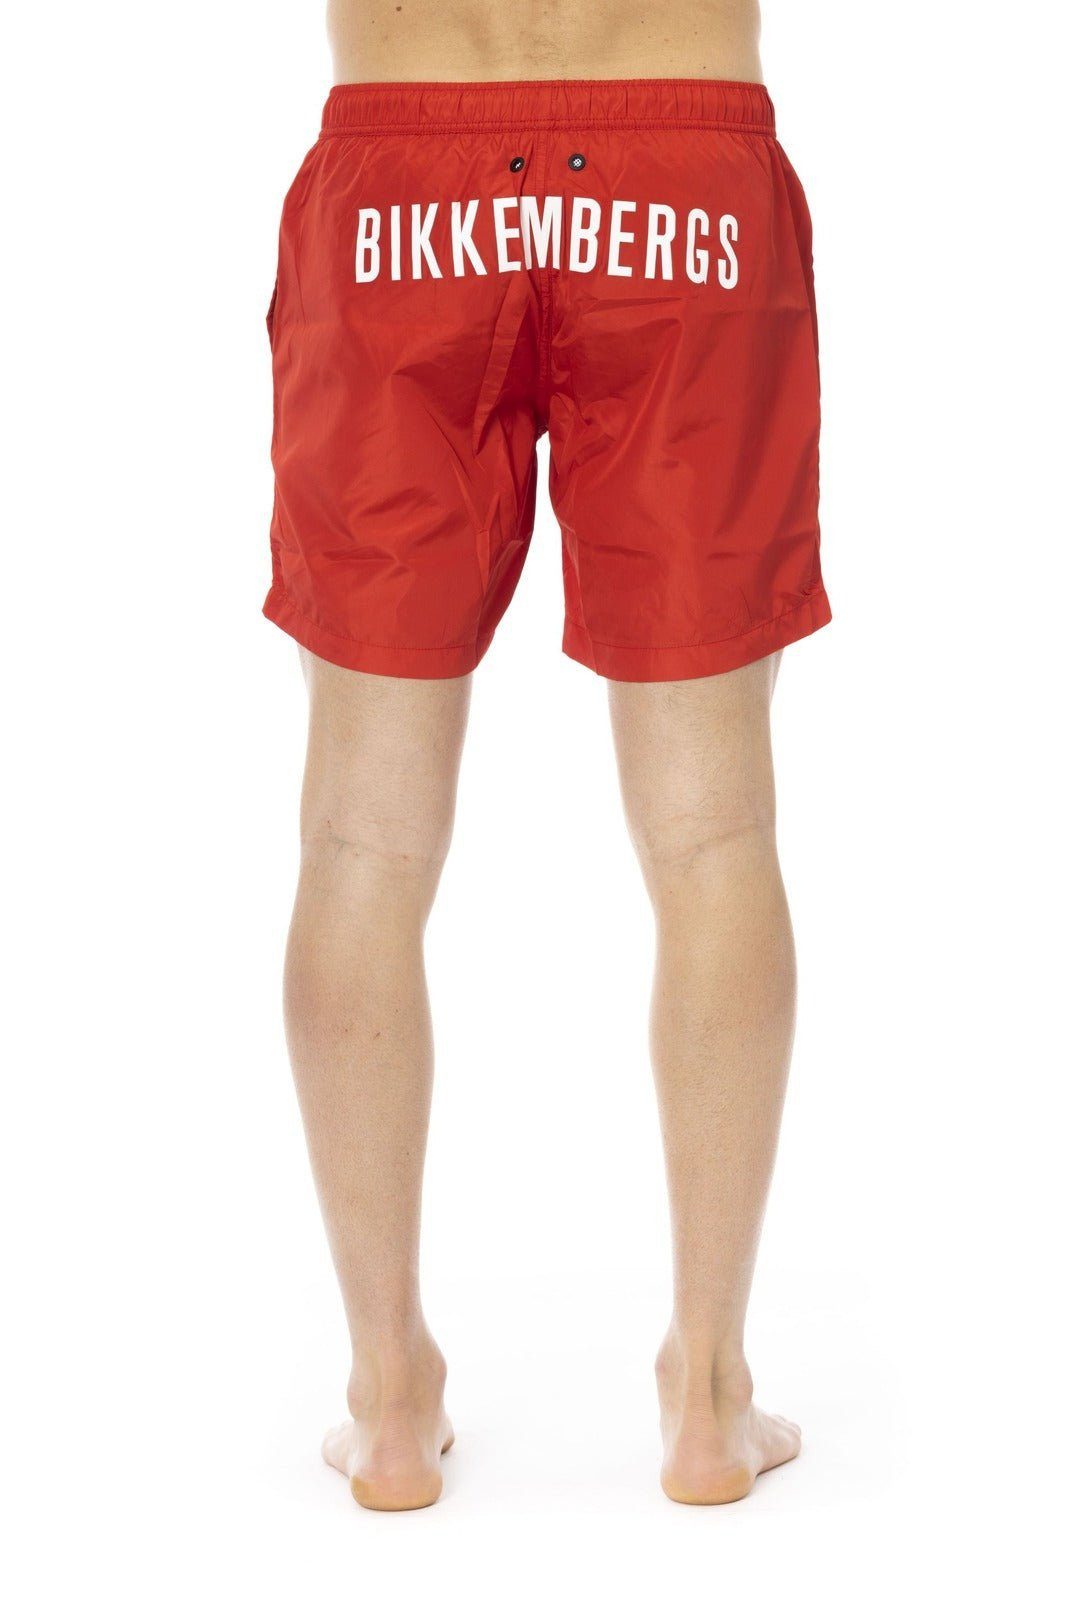 Boxershorts, deinen Bikkembergs Boxer-Badehose Sommerurlaub für Beachwear, Rot Must-Have Bikkembergs Herren